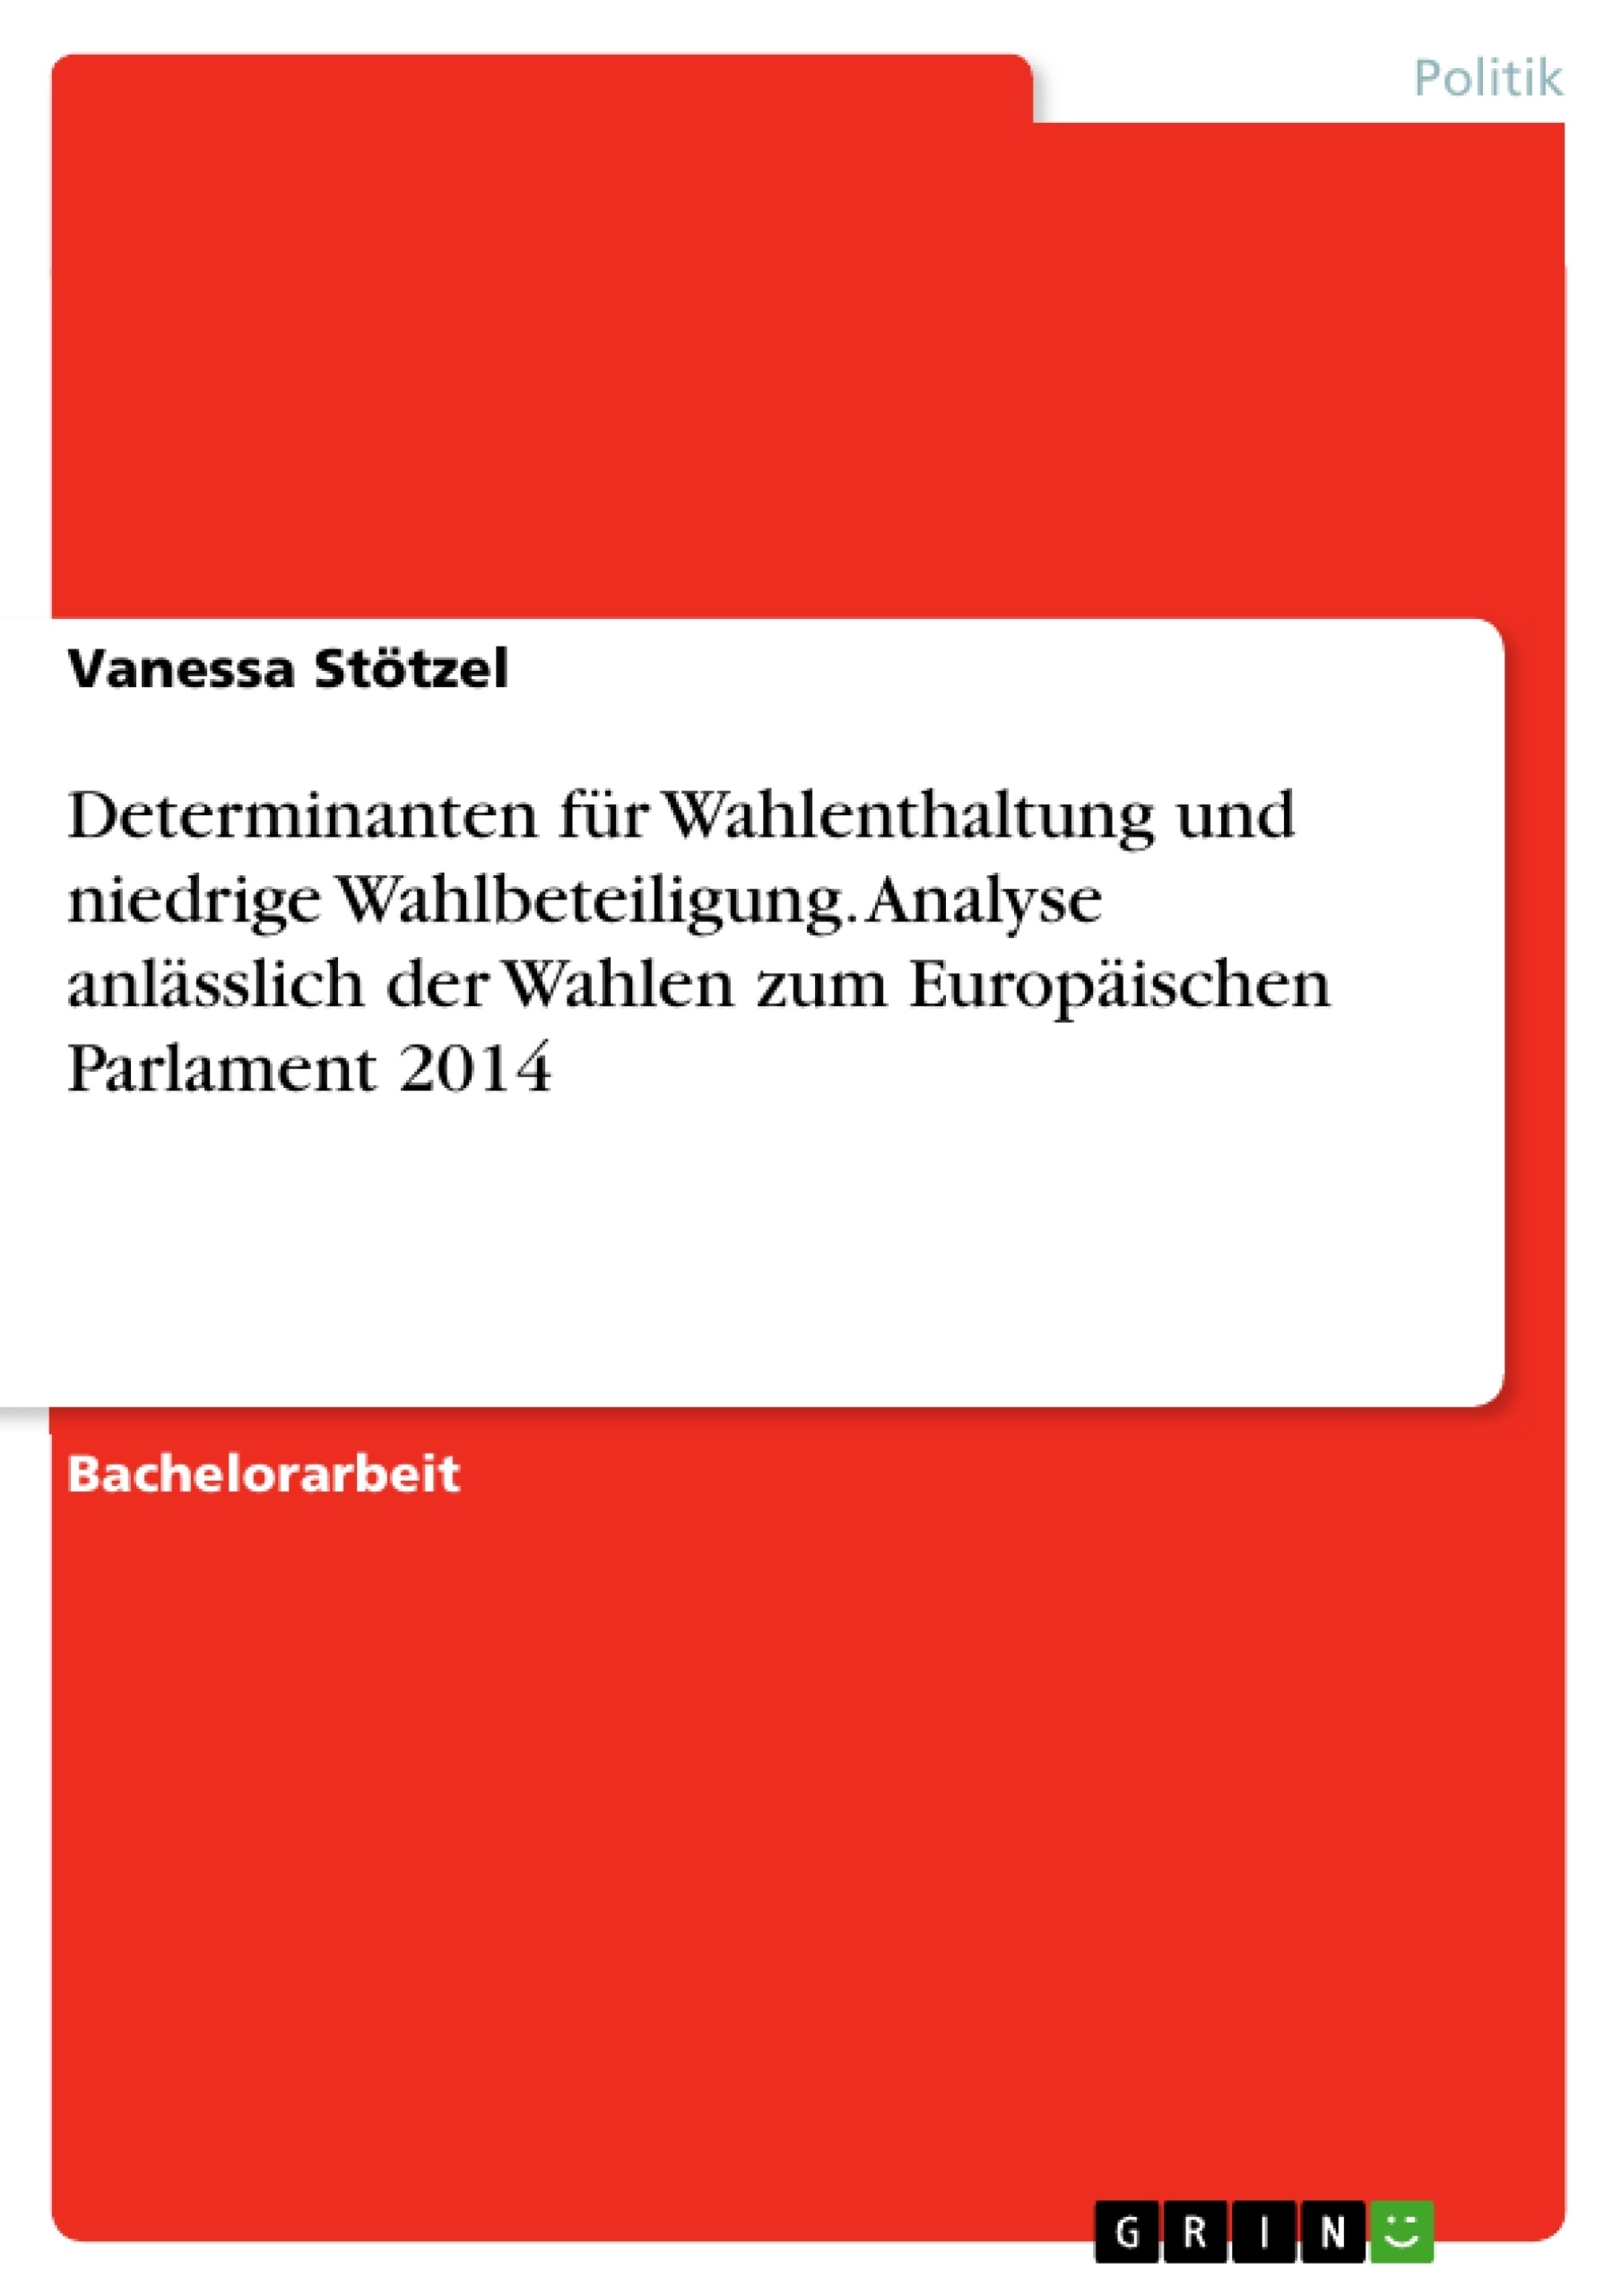 Título: Determinanten für Wahlenthaltung und niedrige Wahlbeteiligung. Analyse anlässlich der Wahlen zum Europäischen Parlament 2014